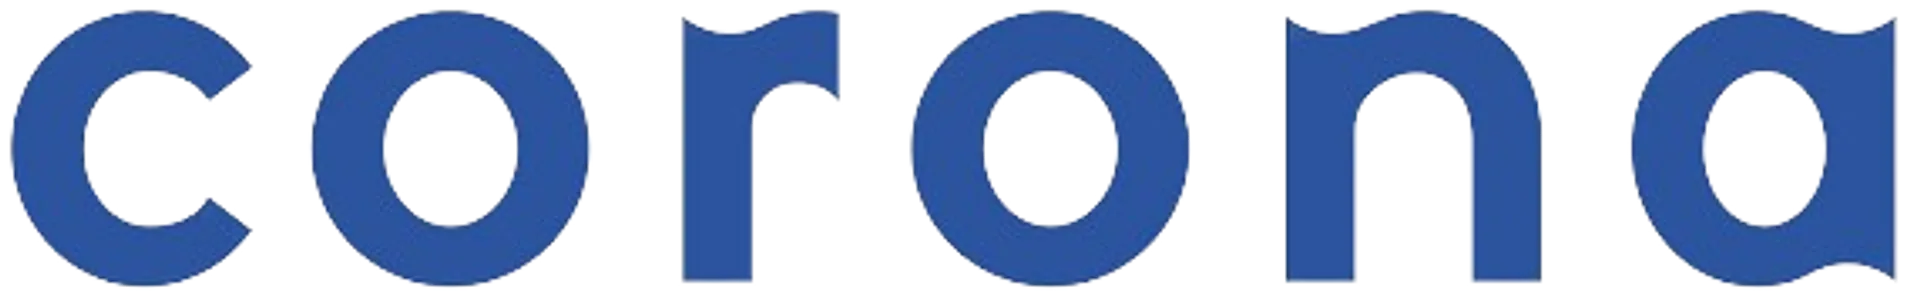 HIPERCENTRO CORONA logo